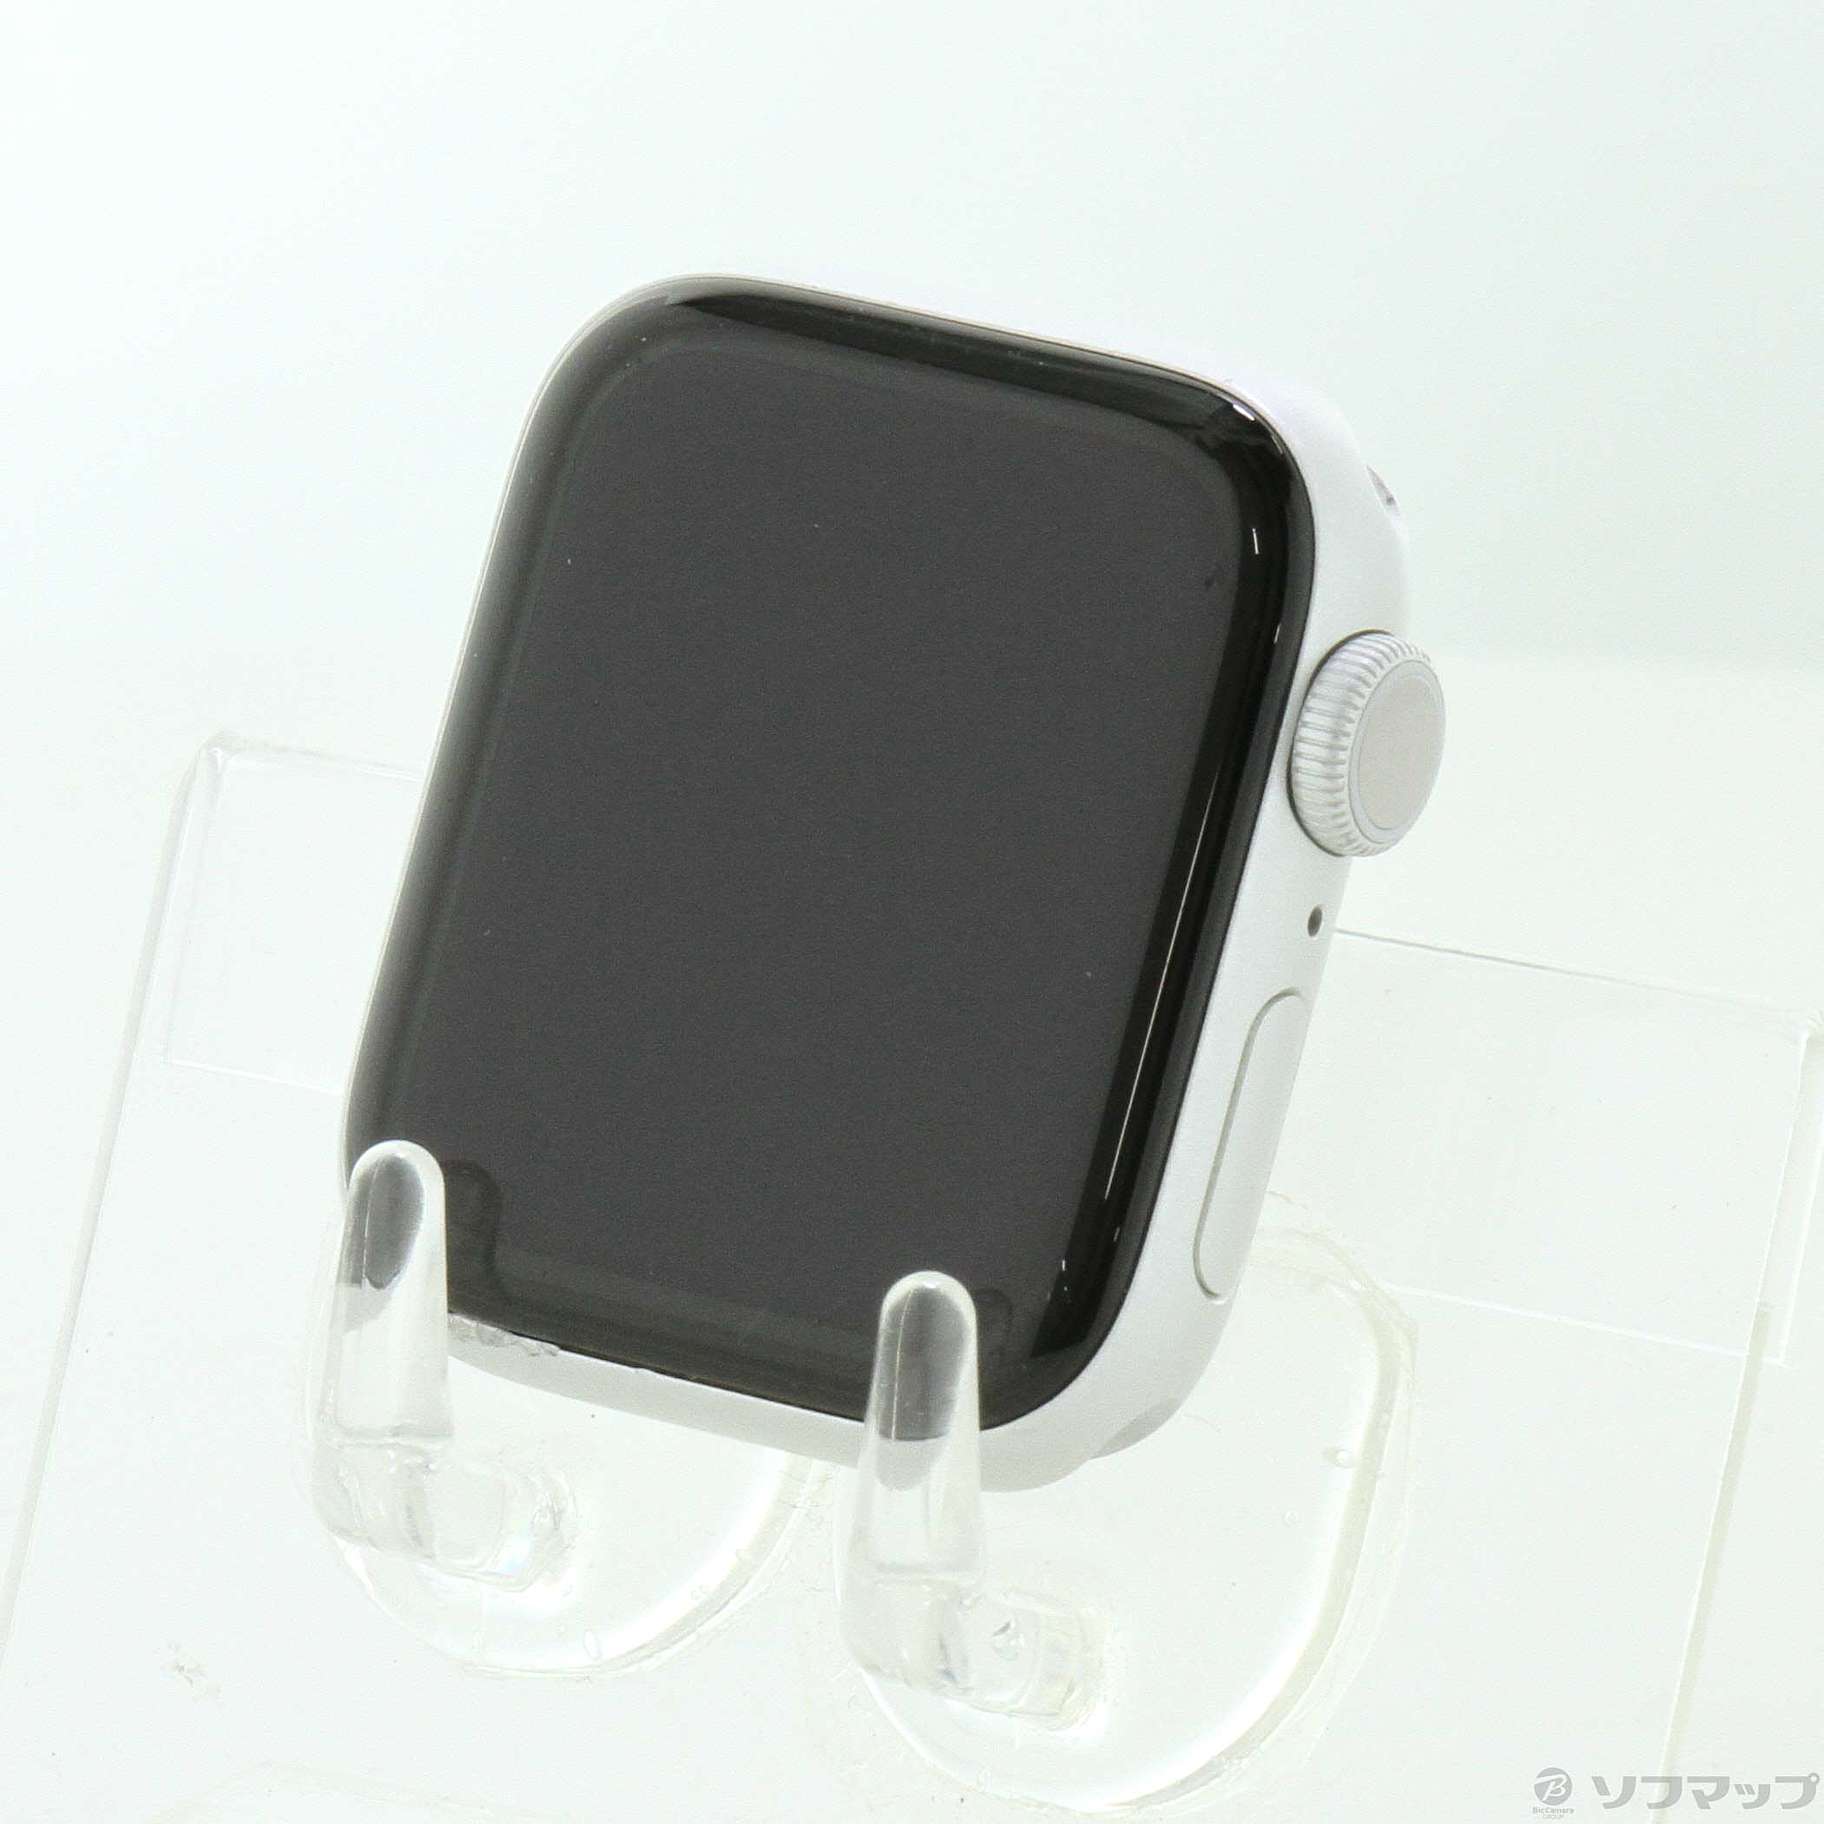 中古】Apple Watch Series 5 GPS 40mm シルバーアルミニウムケース